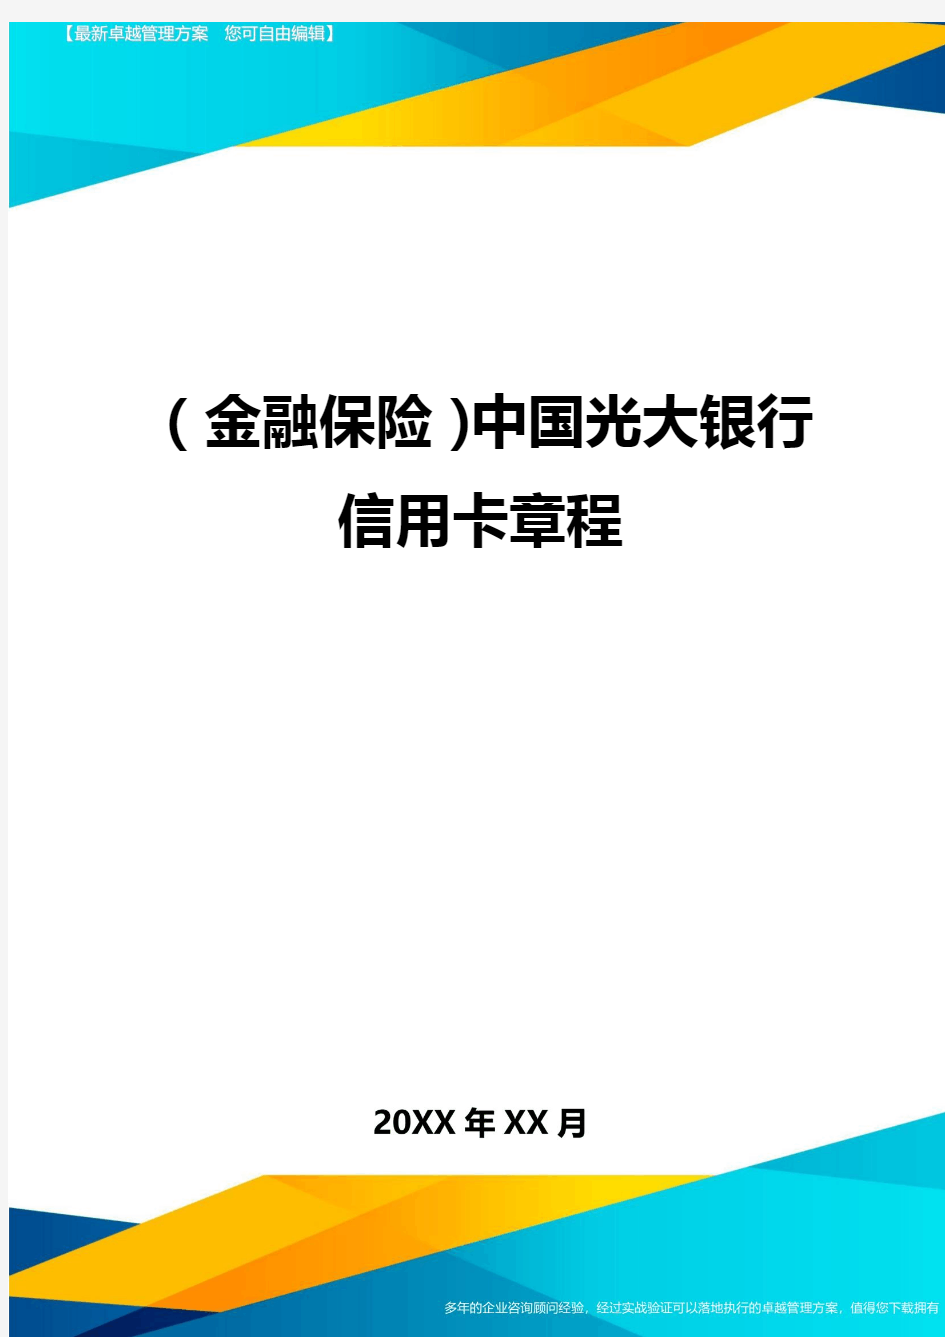 2020年(金融保险)中国光大银行信用卡章程